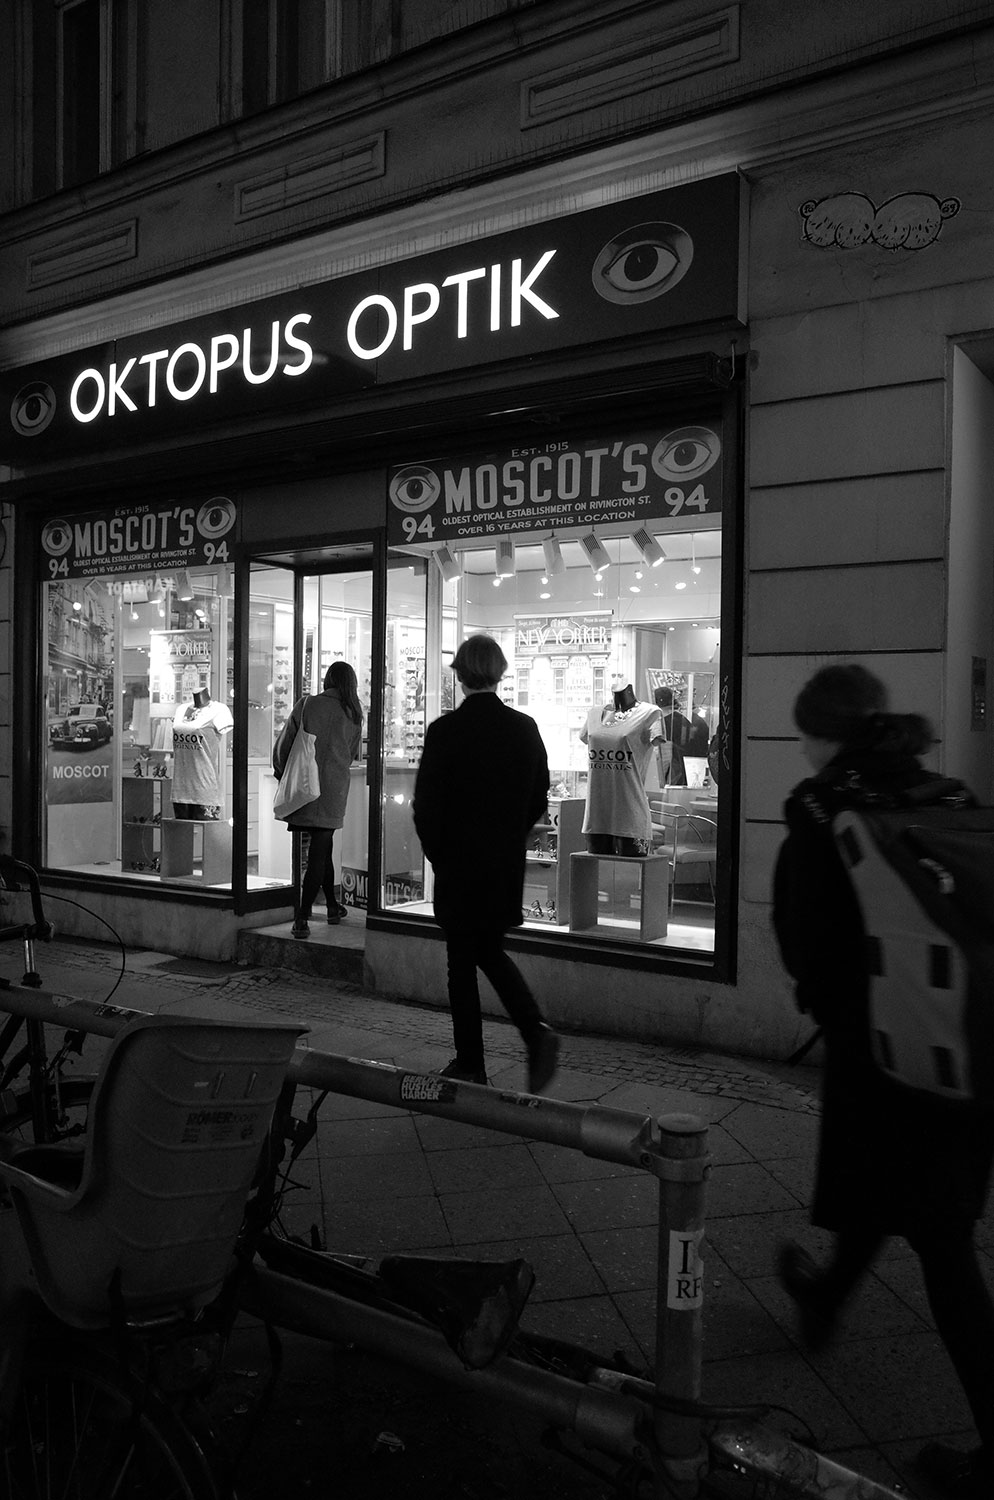 marklmiura PAPA BAG Oktopus Optik Moscot